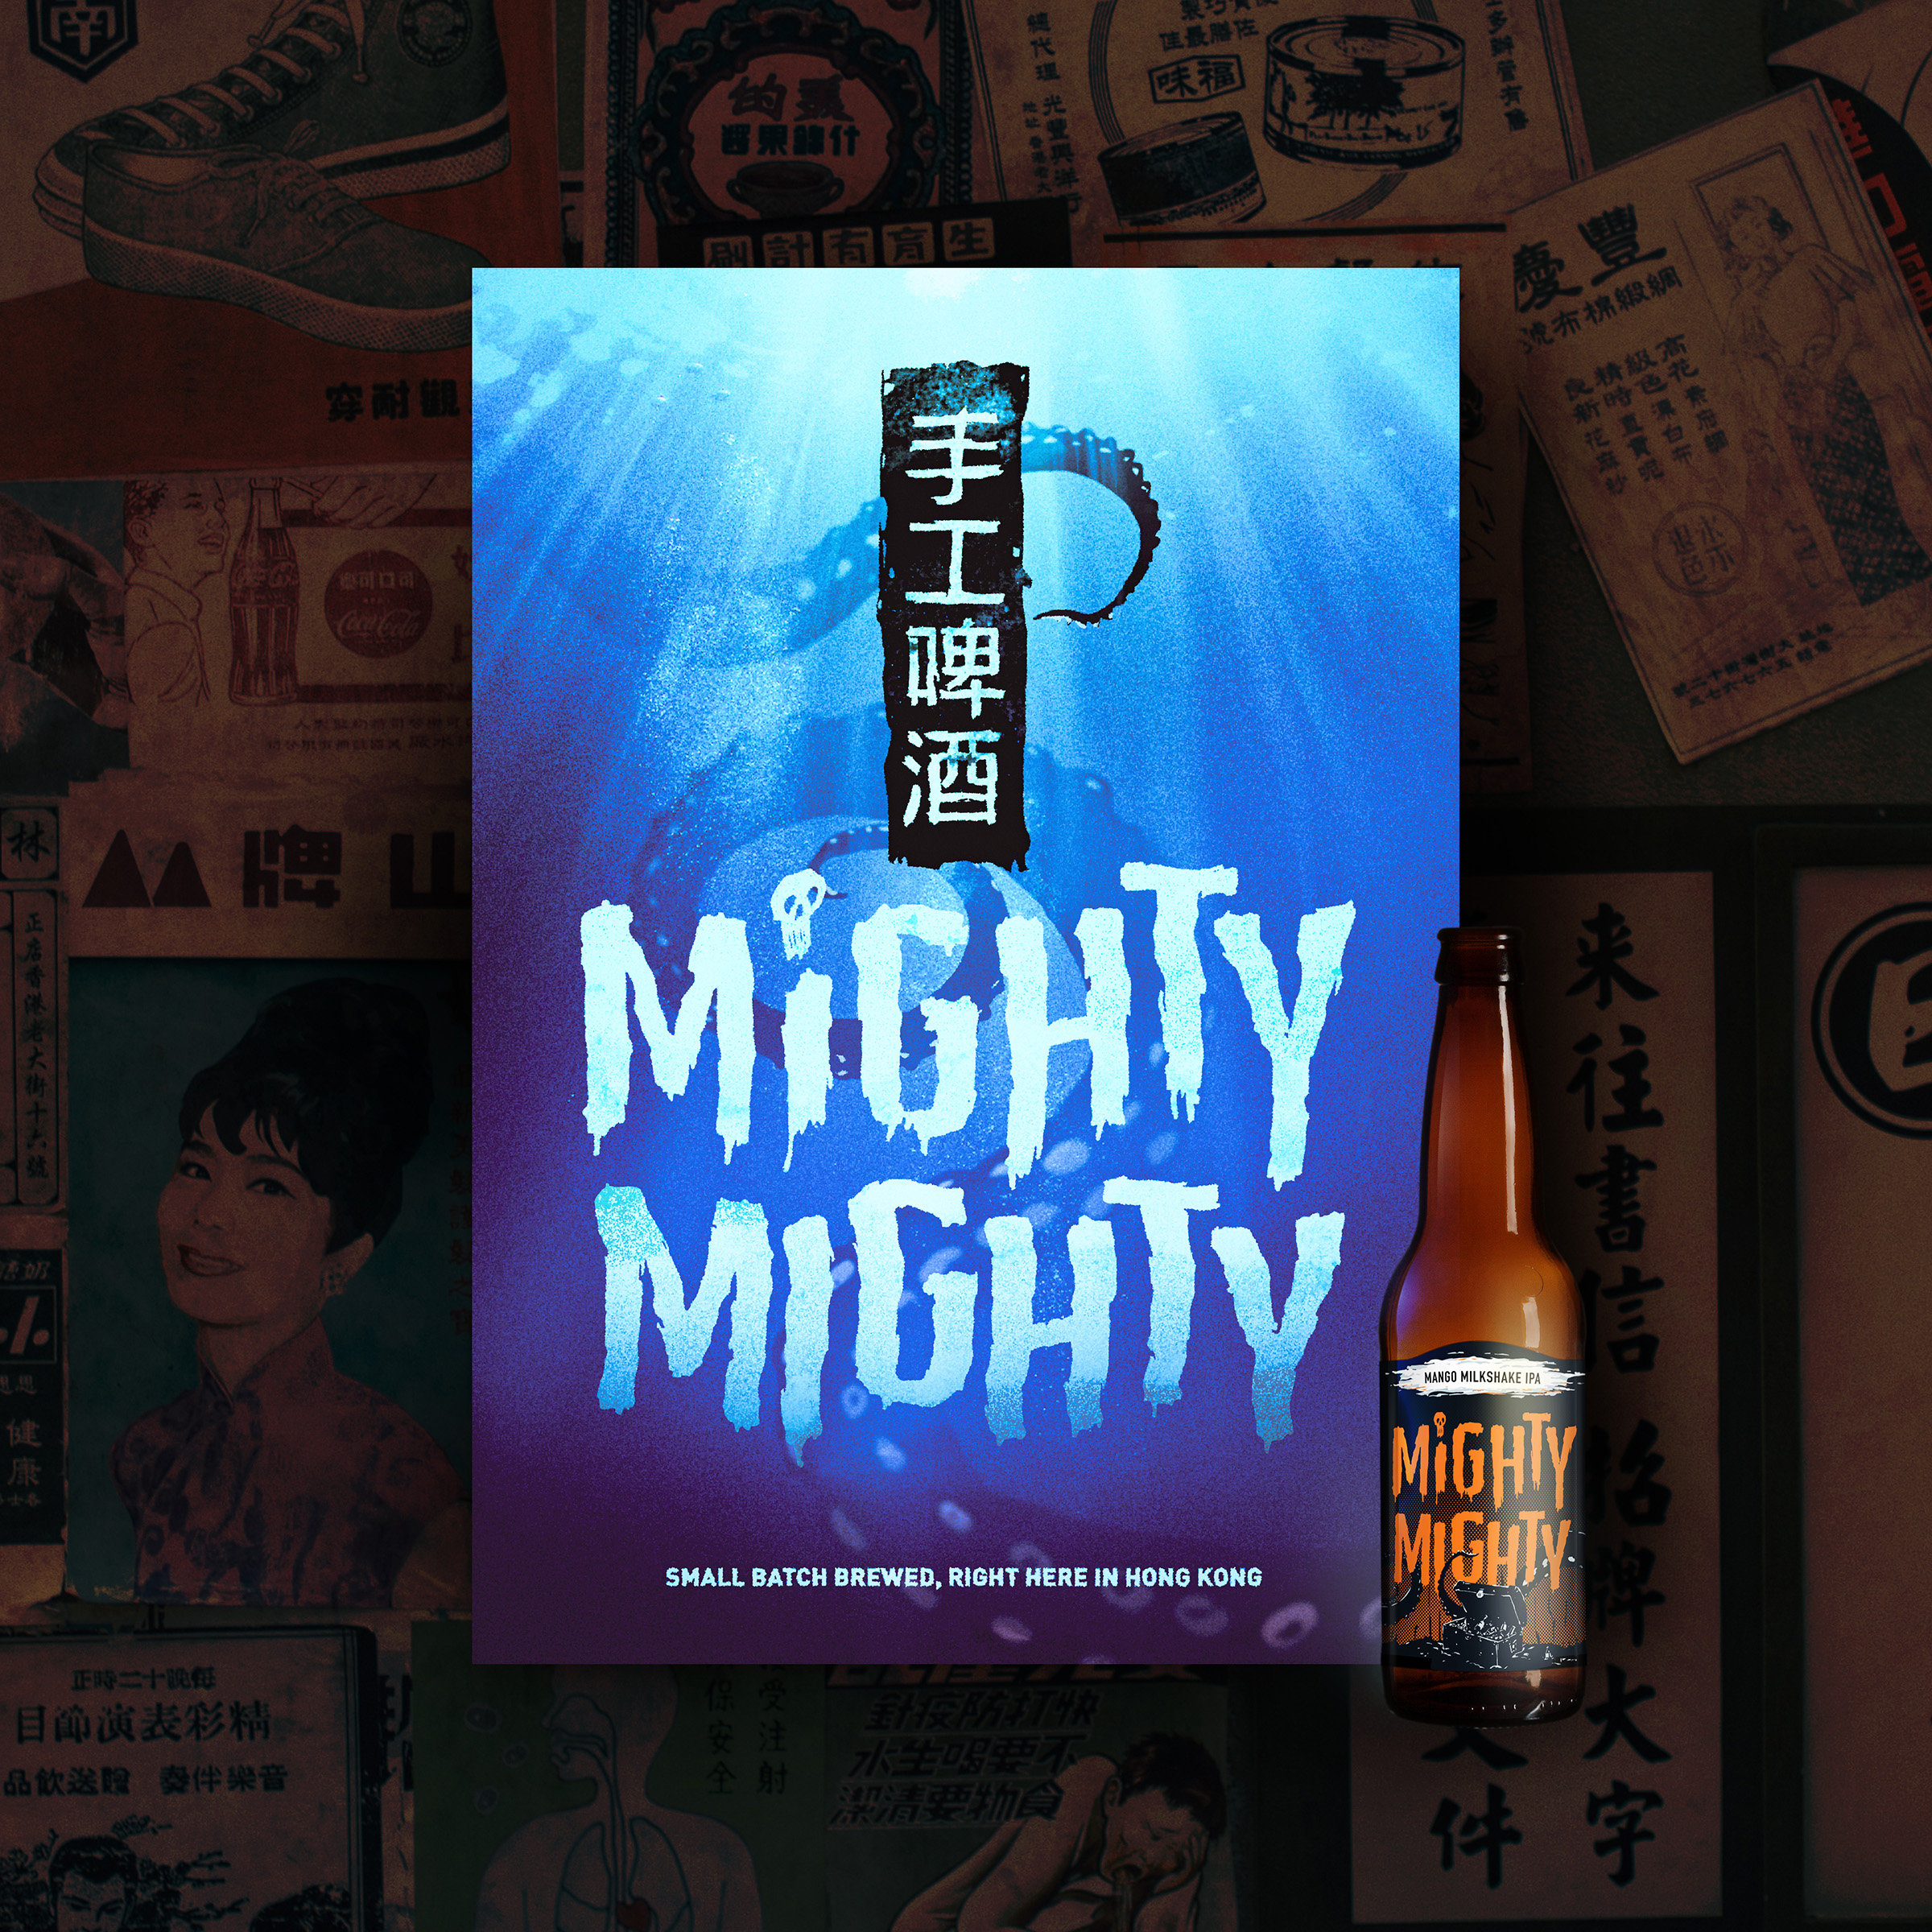 MightyMighty - Beer bottle label design